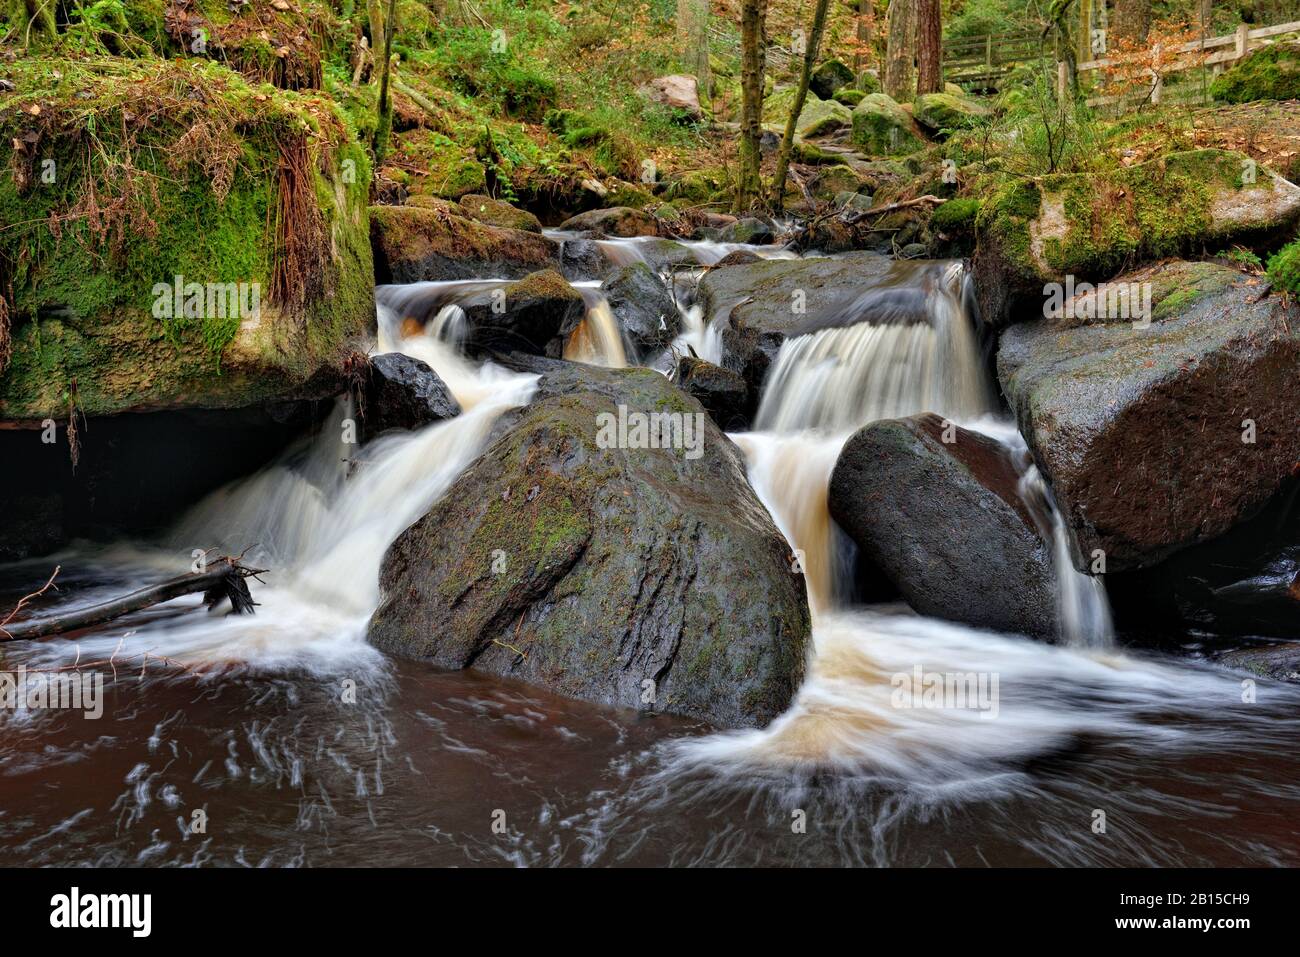 Wyming Brook,réserve naturelle,cascades de chutes d'eau,district de pic,Sheffield,Angleterre,Royaume-Uni Banque D'Images